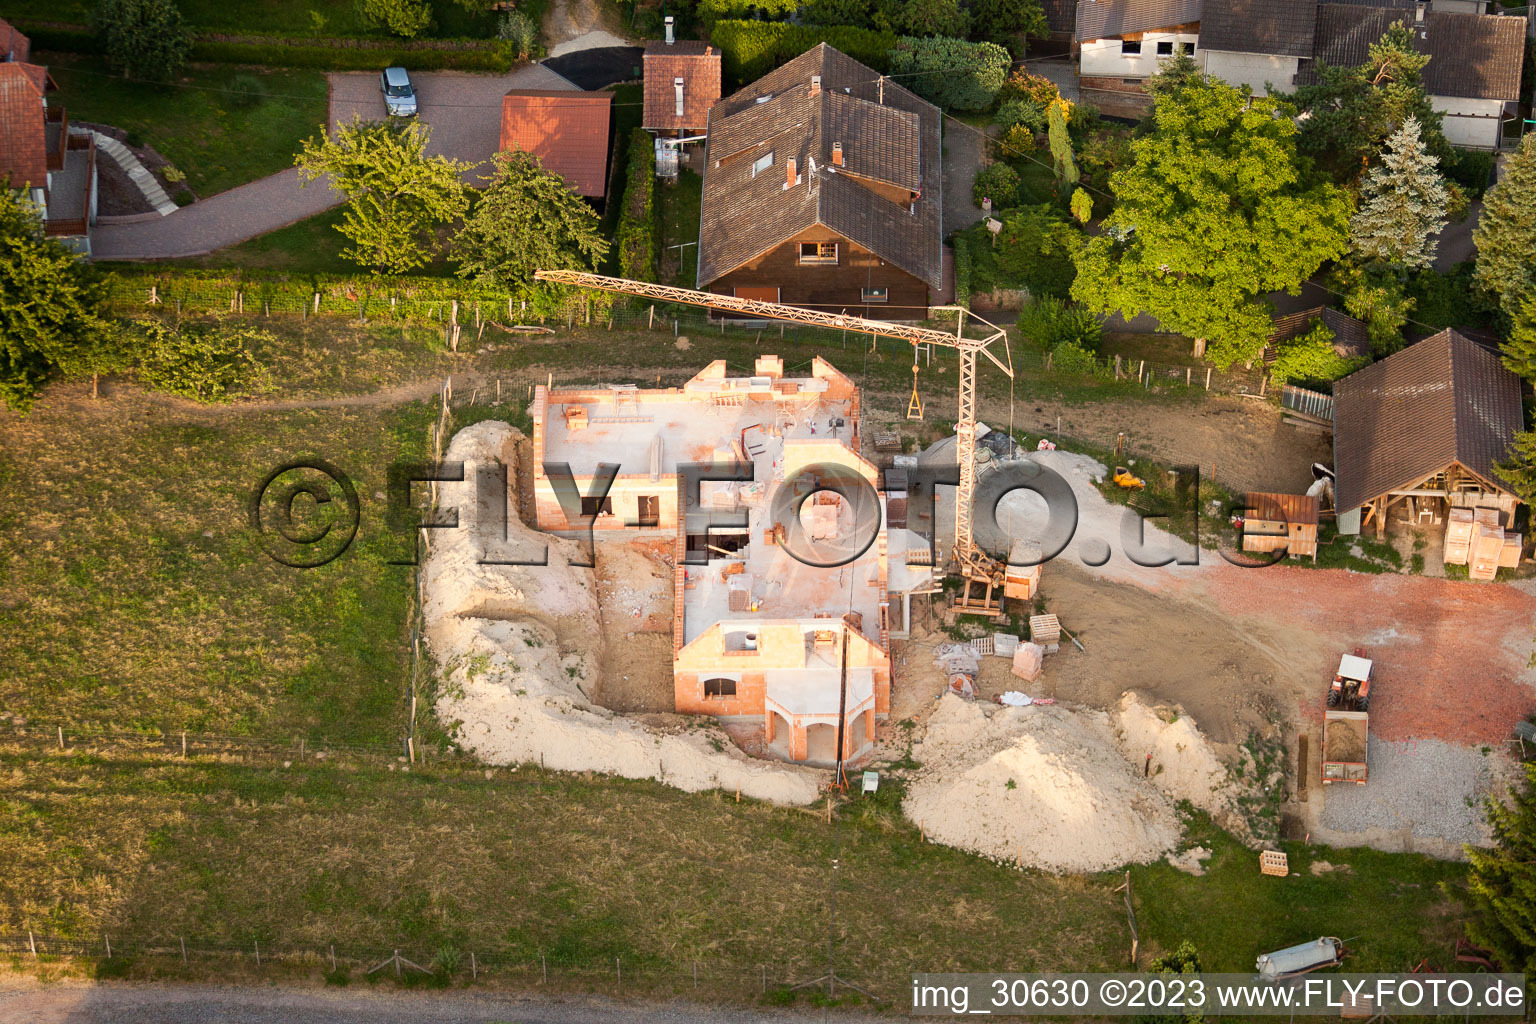 Wintzenbach im Bundesland Bas-Rhin, Frankreich von der Drohne aus gesehen